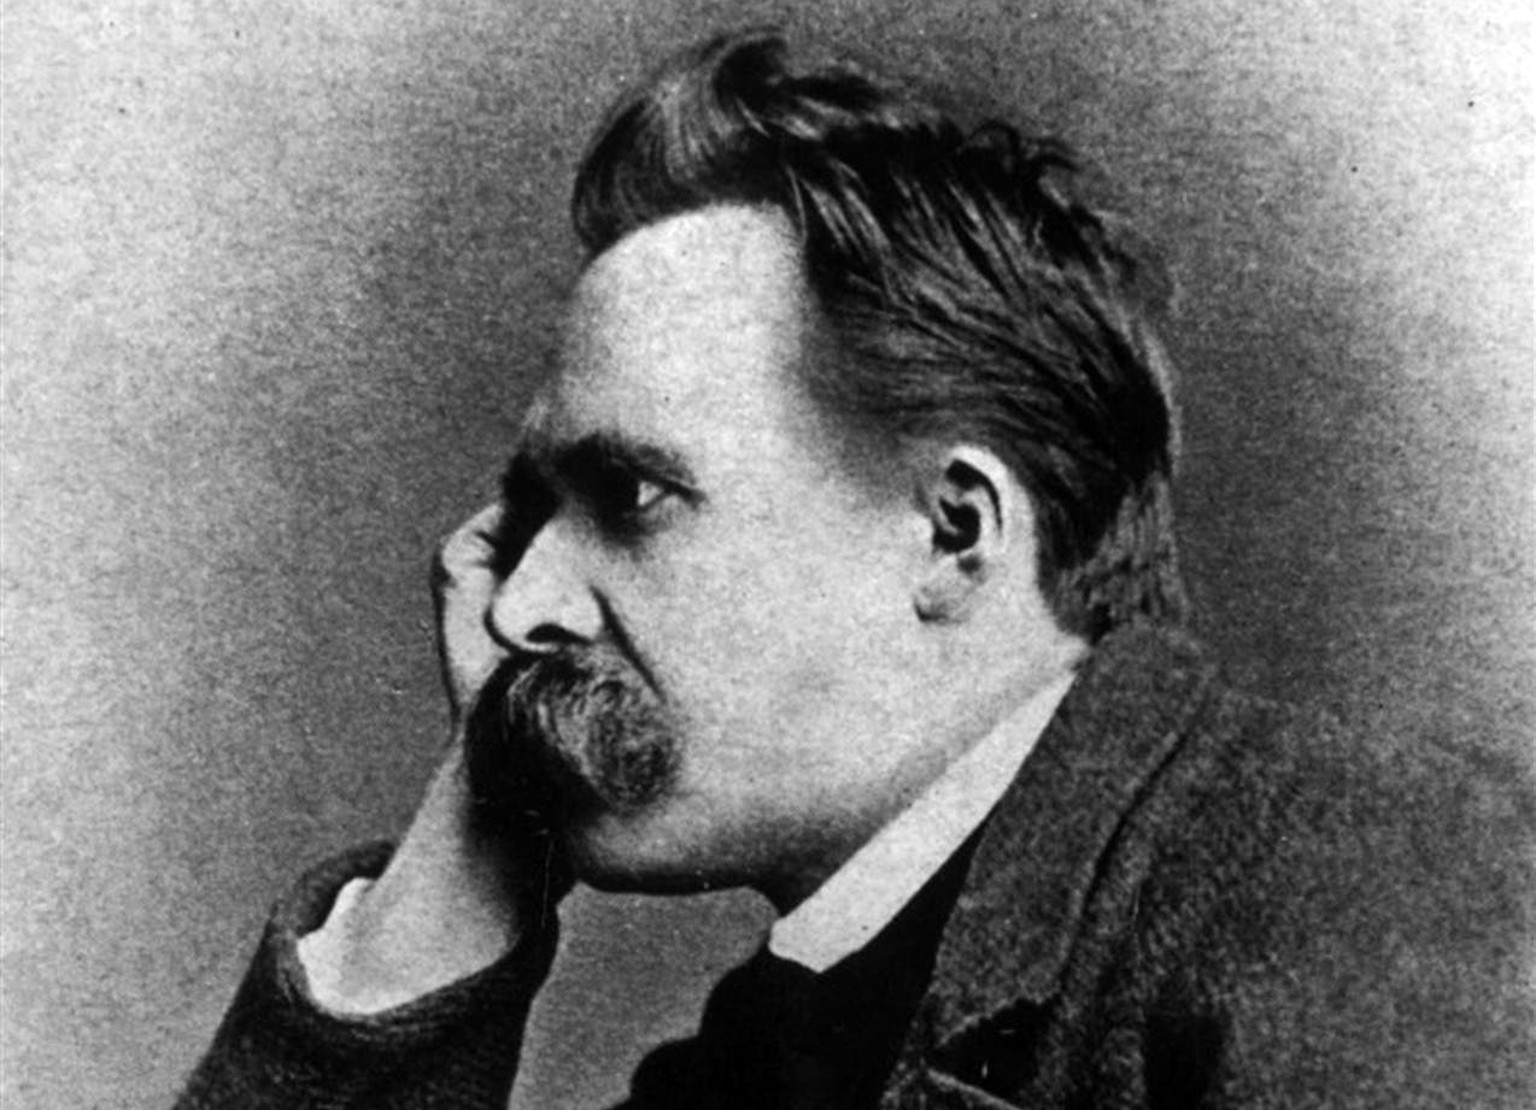 Für Nietzsche ist der Nihilismus das Ergebnis der Überzeugung, dass es keine absoluten Wahrheiten und Werte gibt. Hieraus ergibt sich ein «Glauben an die absolute Wertlosigkeit, das heisst Sinnlosigkeit. Es fehlt das Ziel. Es fehlt die Antwort auf das ‹Wozu?›»